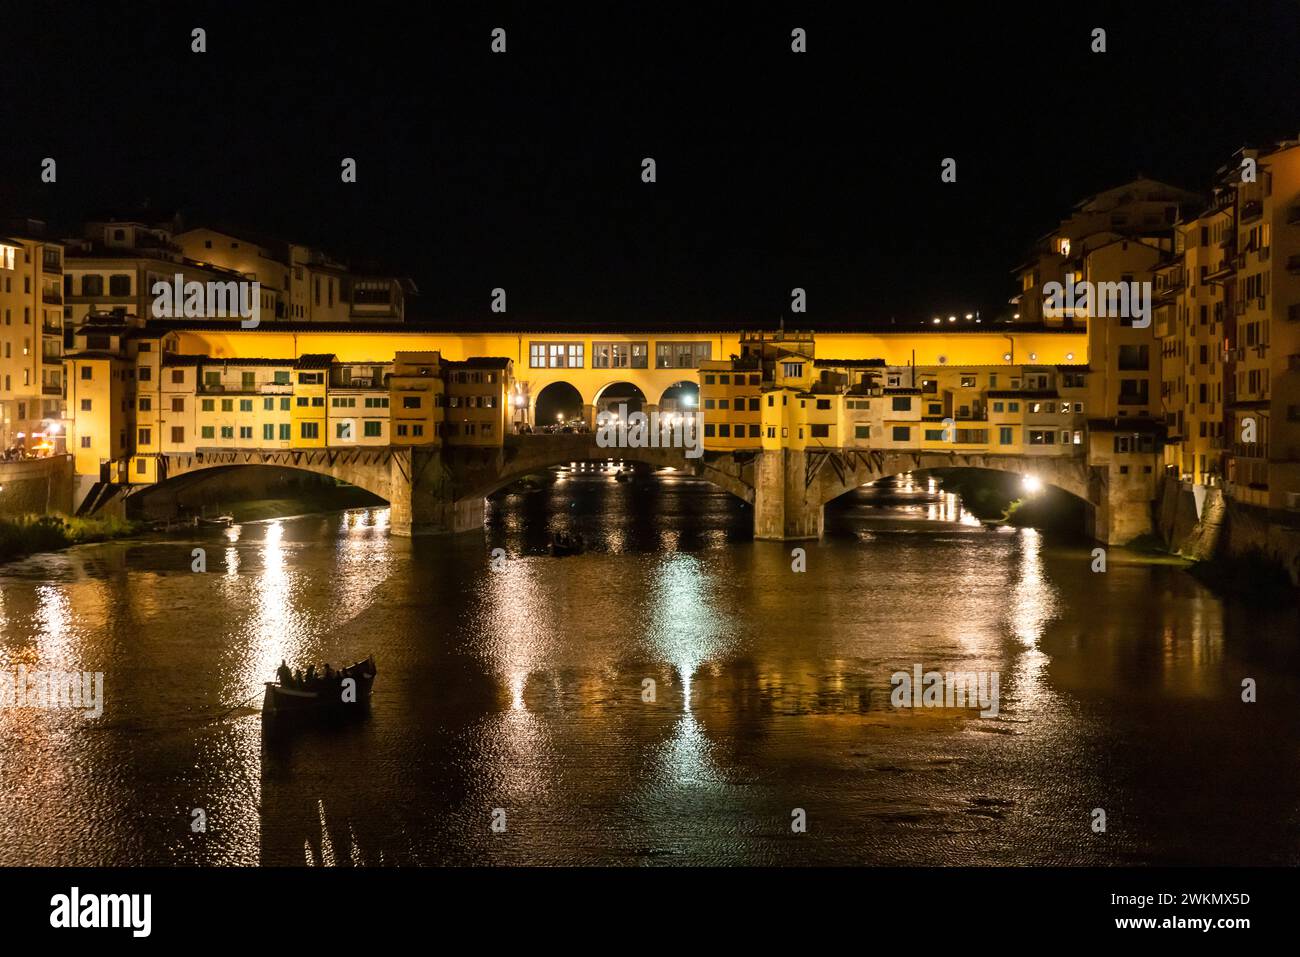 Der Fluss Arno fließt über 150 km und ist vor allem für die Ponte Vecchio bekannt, eine prächtige Brücke aus dem Mittelalter, die als Archit gilt Stockfoto